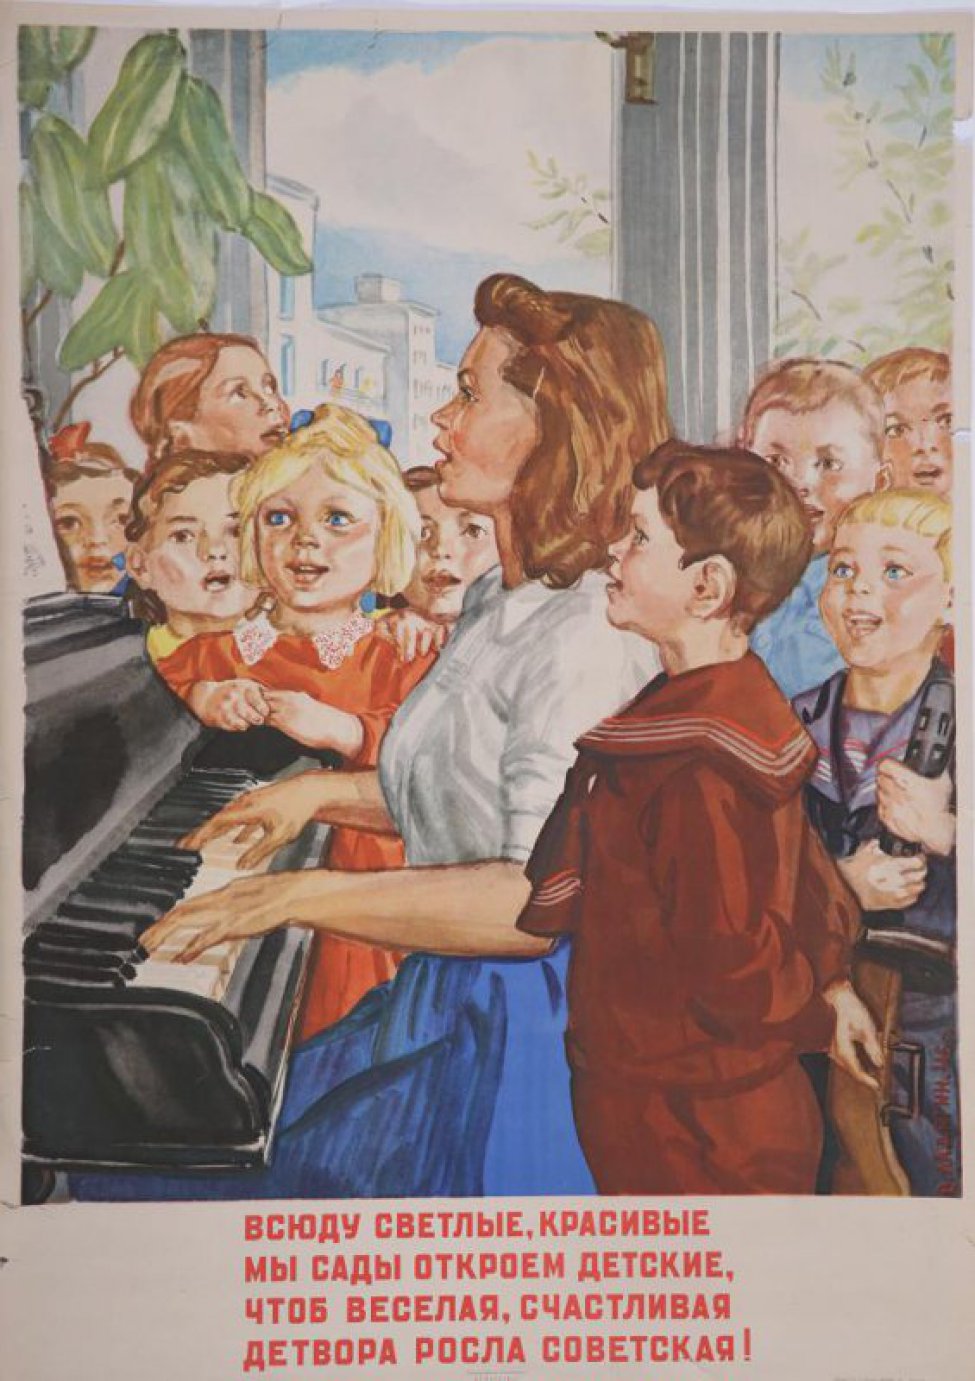 Изображена группа поющих детей, окруживших молодую воспитательницу, которая играет на пианино. Через окно виден новый дом. Под изображением текст. Справа внизу: В. Ладягин. 46г.